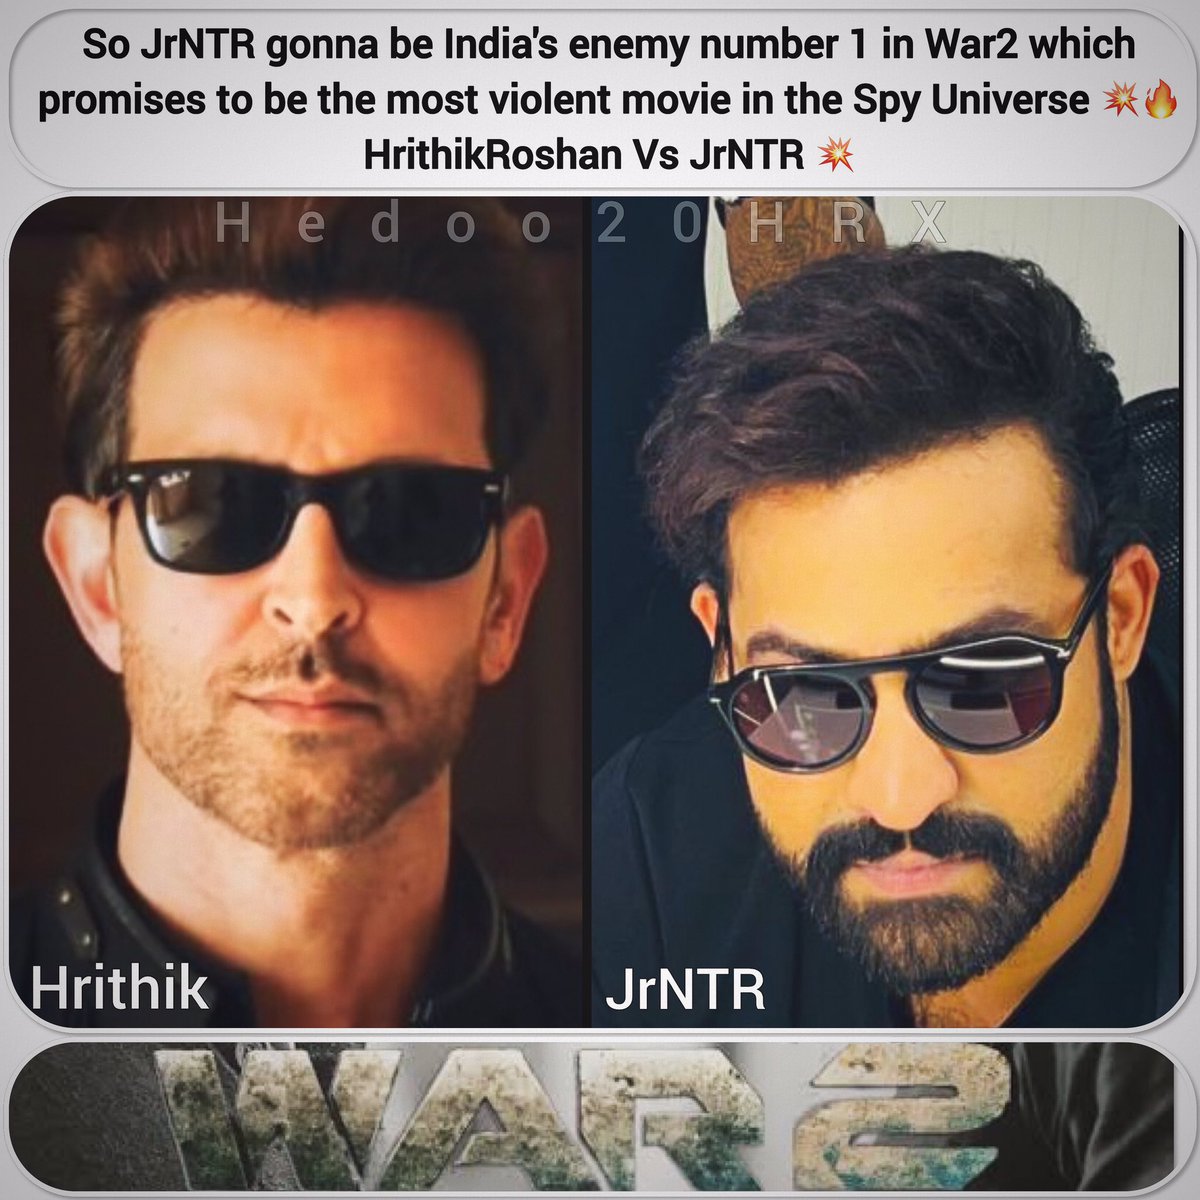 إذن ، ان تي ار جونير ، سيكون عدو الهند رقم 1 في #War2 والذي يعد بأن يكون الفيلم الأكثر عنفًا في عالم التجسس 💥🔥
#HrithikRoshan مقابل #JrNTR 💥
:
#ريتيك_روشان #هريثيك_روشان
#HrithikRoshan #Hrithik #TeamHrithik  #Superstar #Hrithikians #Bollywood #hrithikroshanzone  #india #war